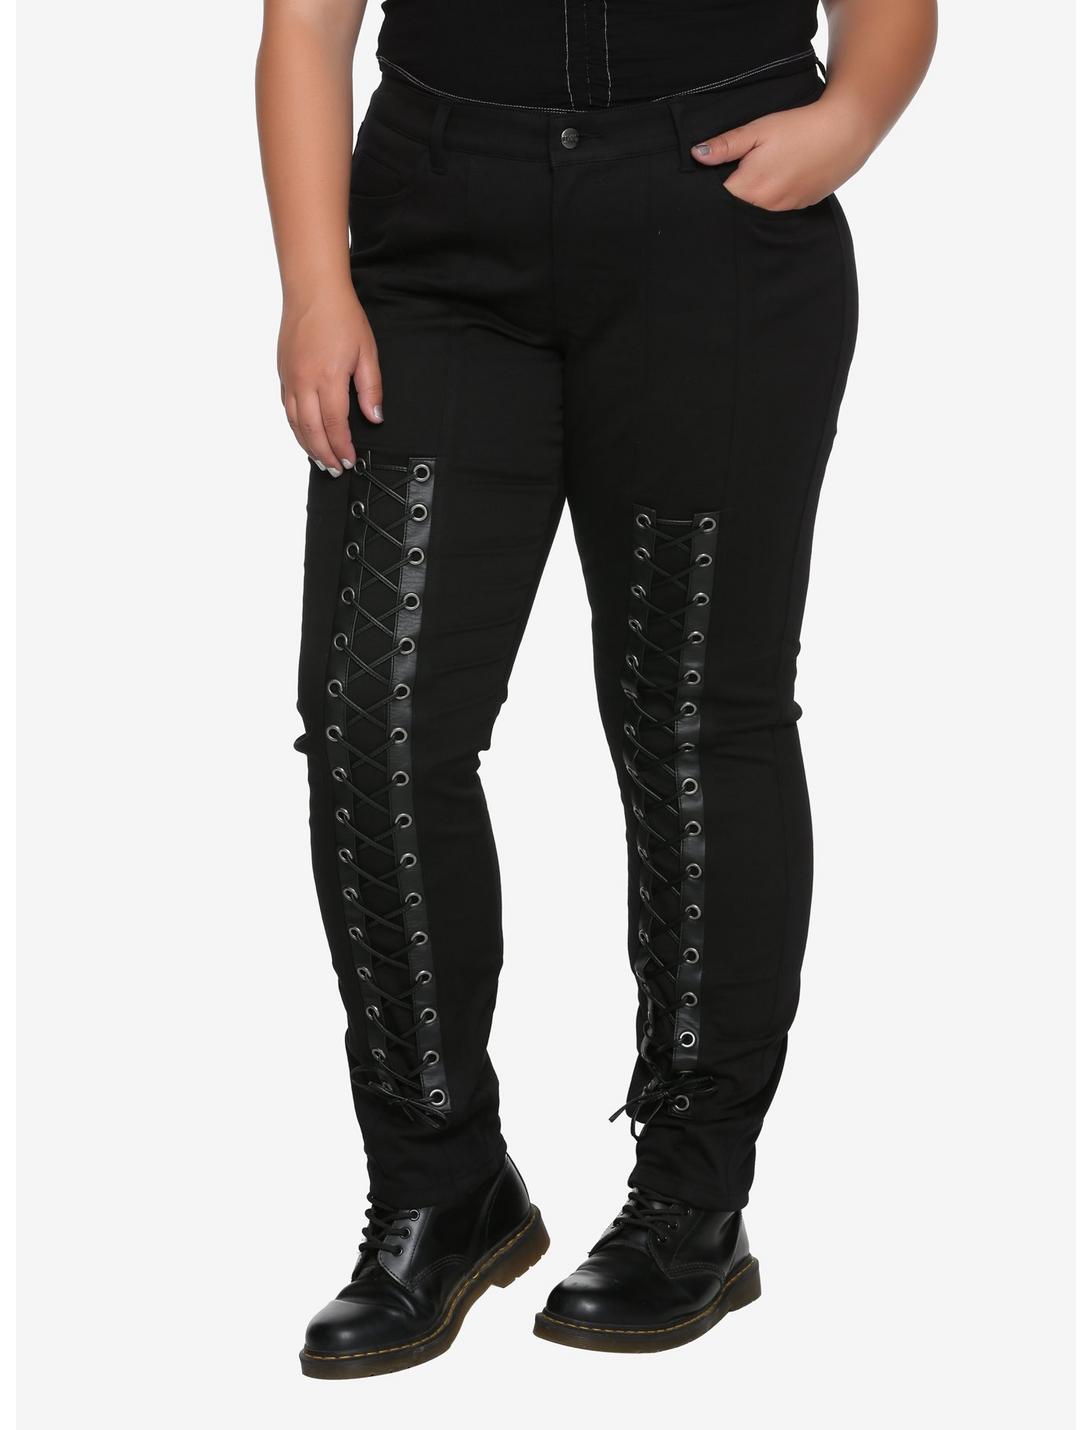 Tripp Black Lace-Up Pants Plus Size | Hot Topic